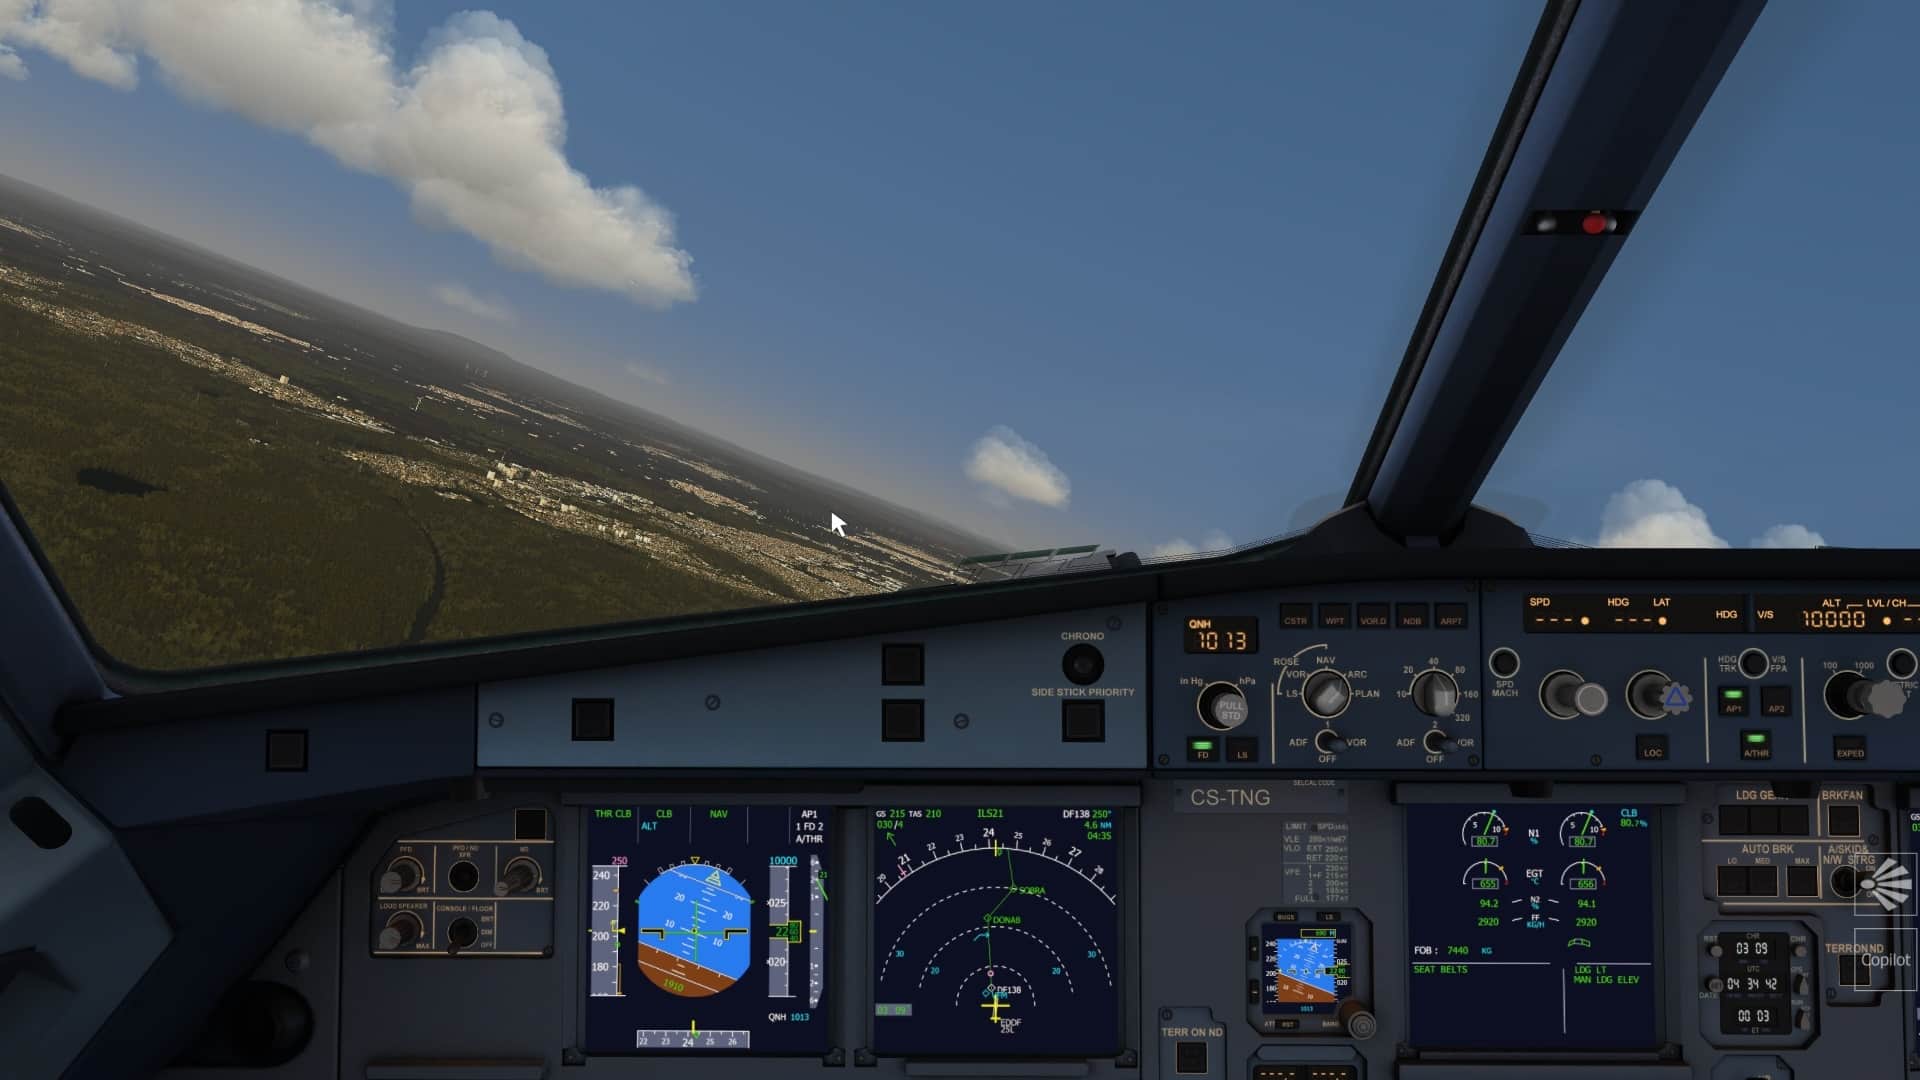  Een bekend gezicht: De cockpit van de Airbus A320. De Aerofly FS 4 A320 is betrouwbaarder dan de standaard A320 van de Microsoft Flight Simulator (maar goed, dat is ook niet moeilijk, en niemand vliegt er toch mee zonder de FlyByWire mod, toch?))